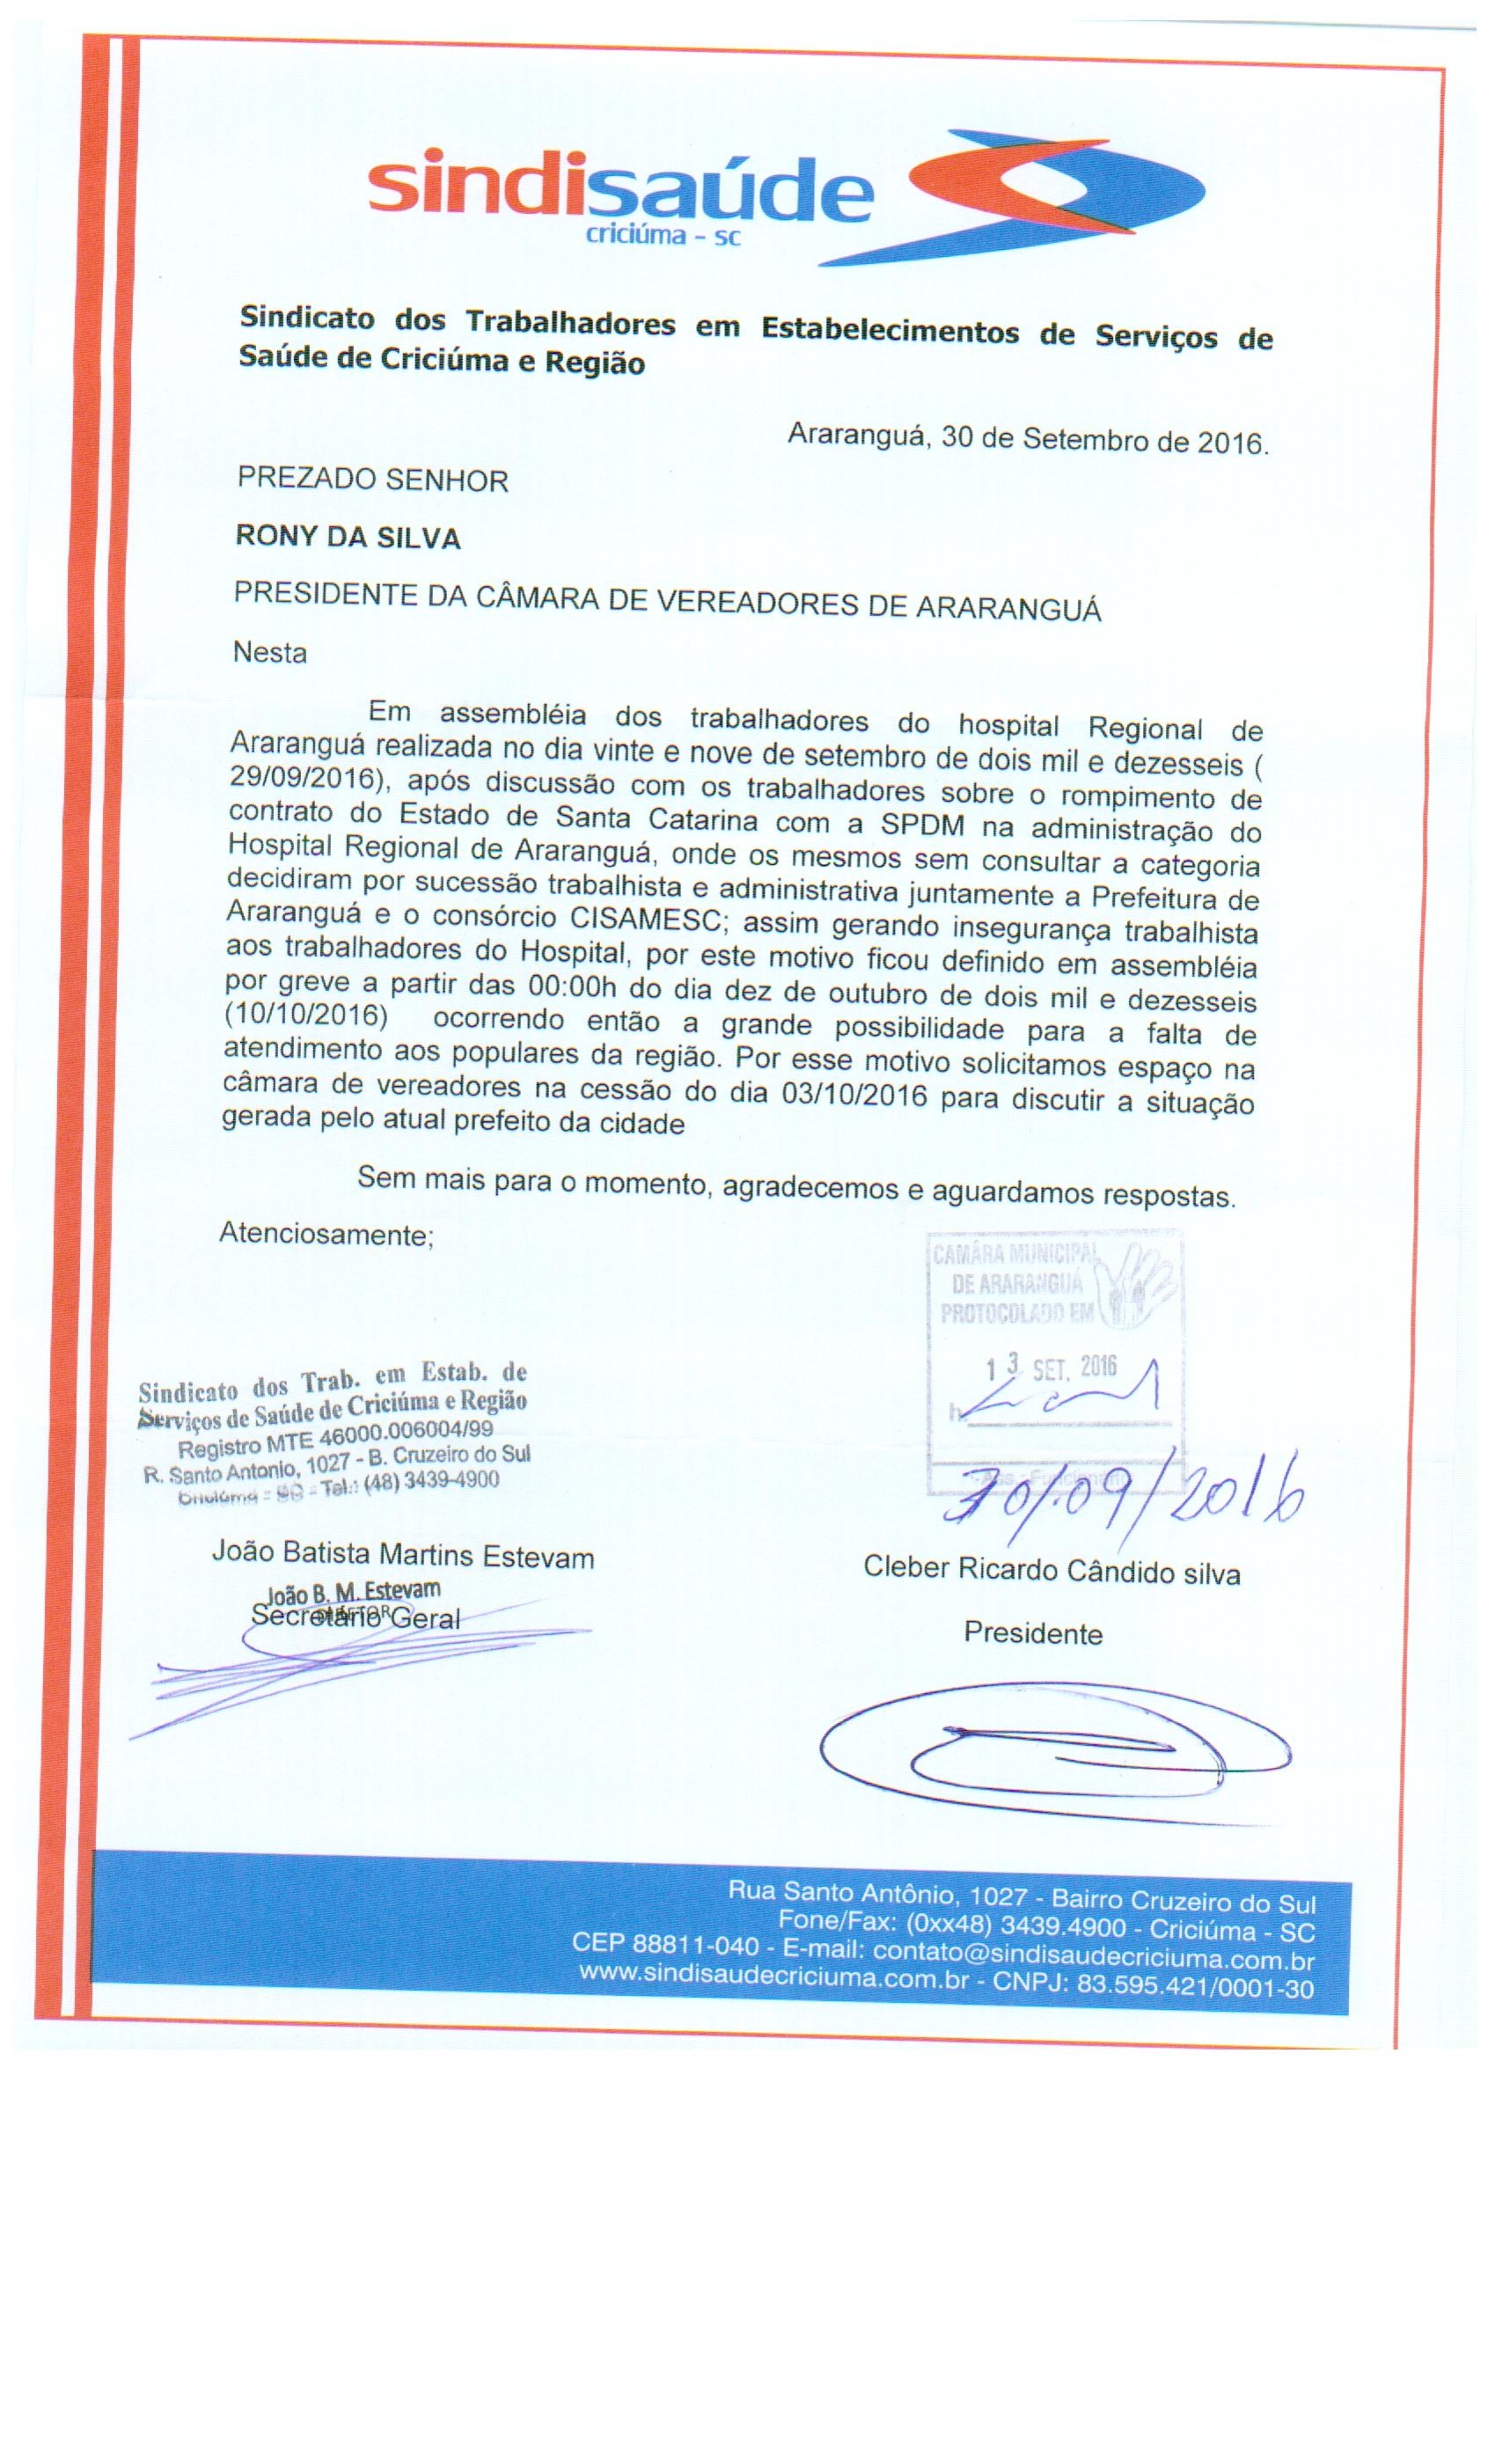 Ofício encaminhado a Câm. de Ver. de Araranguá sobre assembléia com os trabalhadores da SPDM - HRA